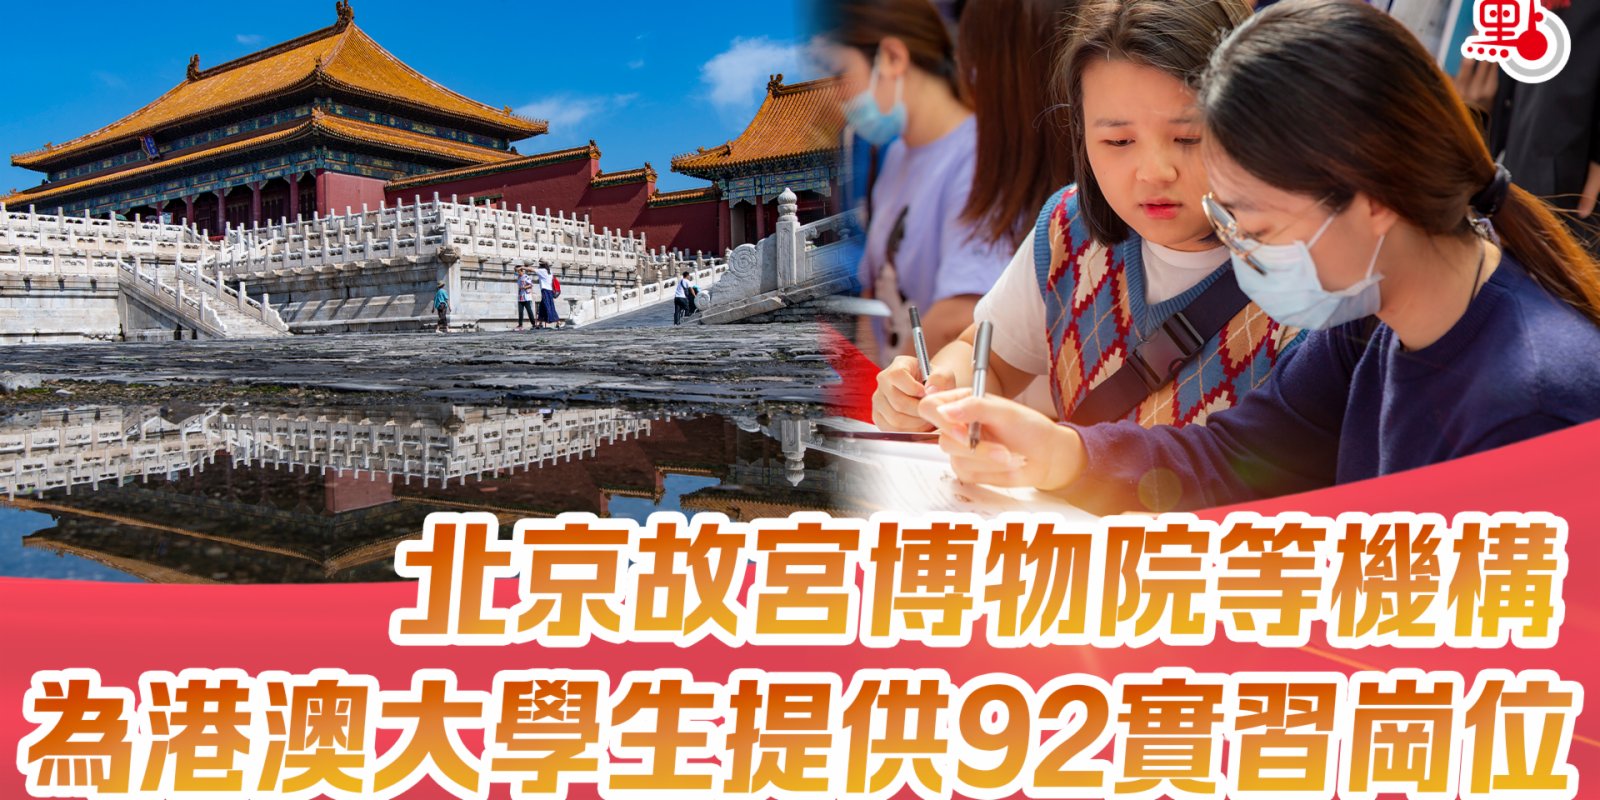 北京故宮博物院等機構為港澳大學生提供92實習崗位